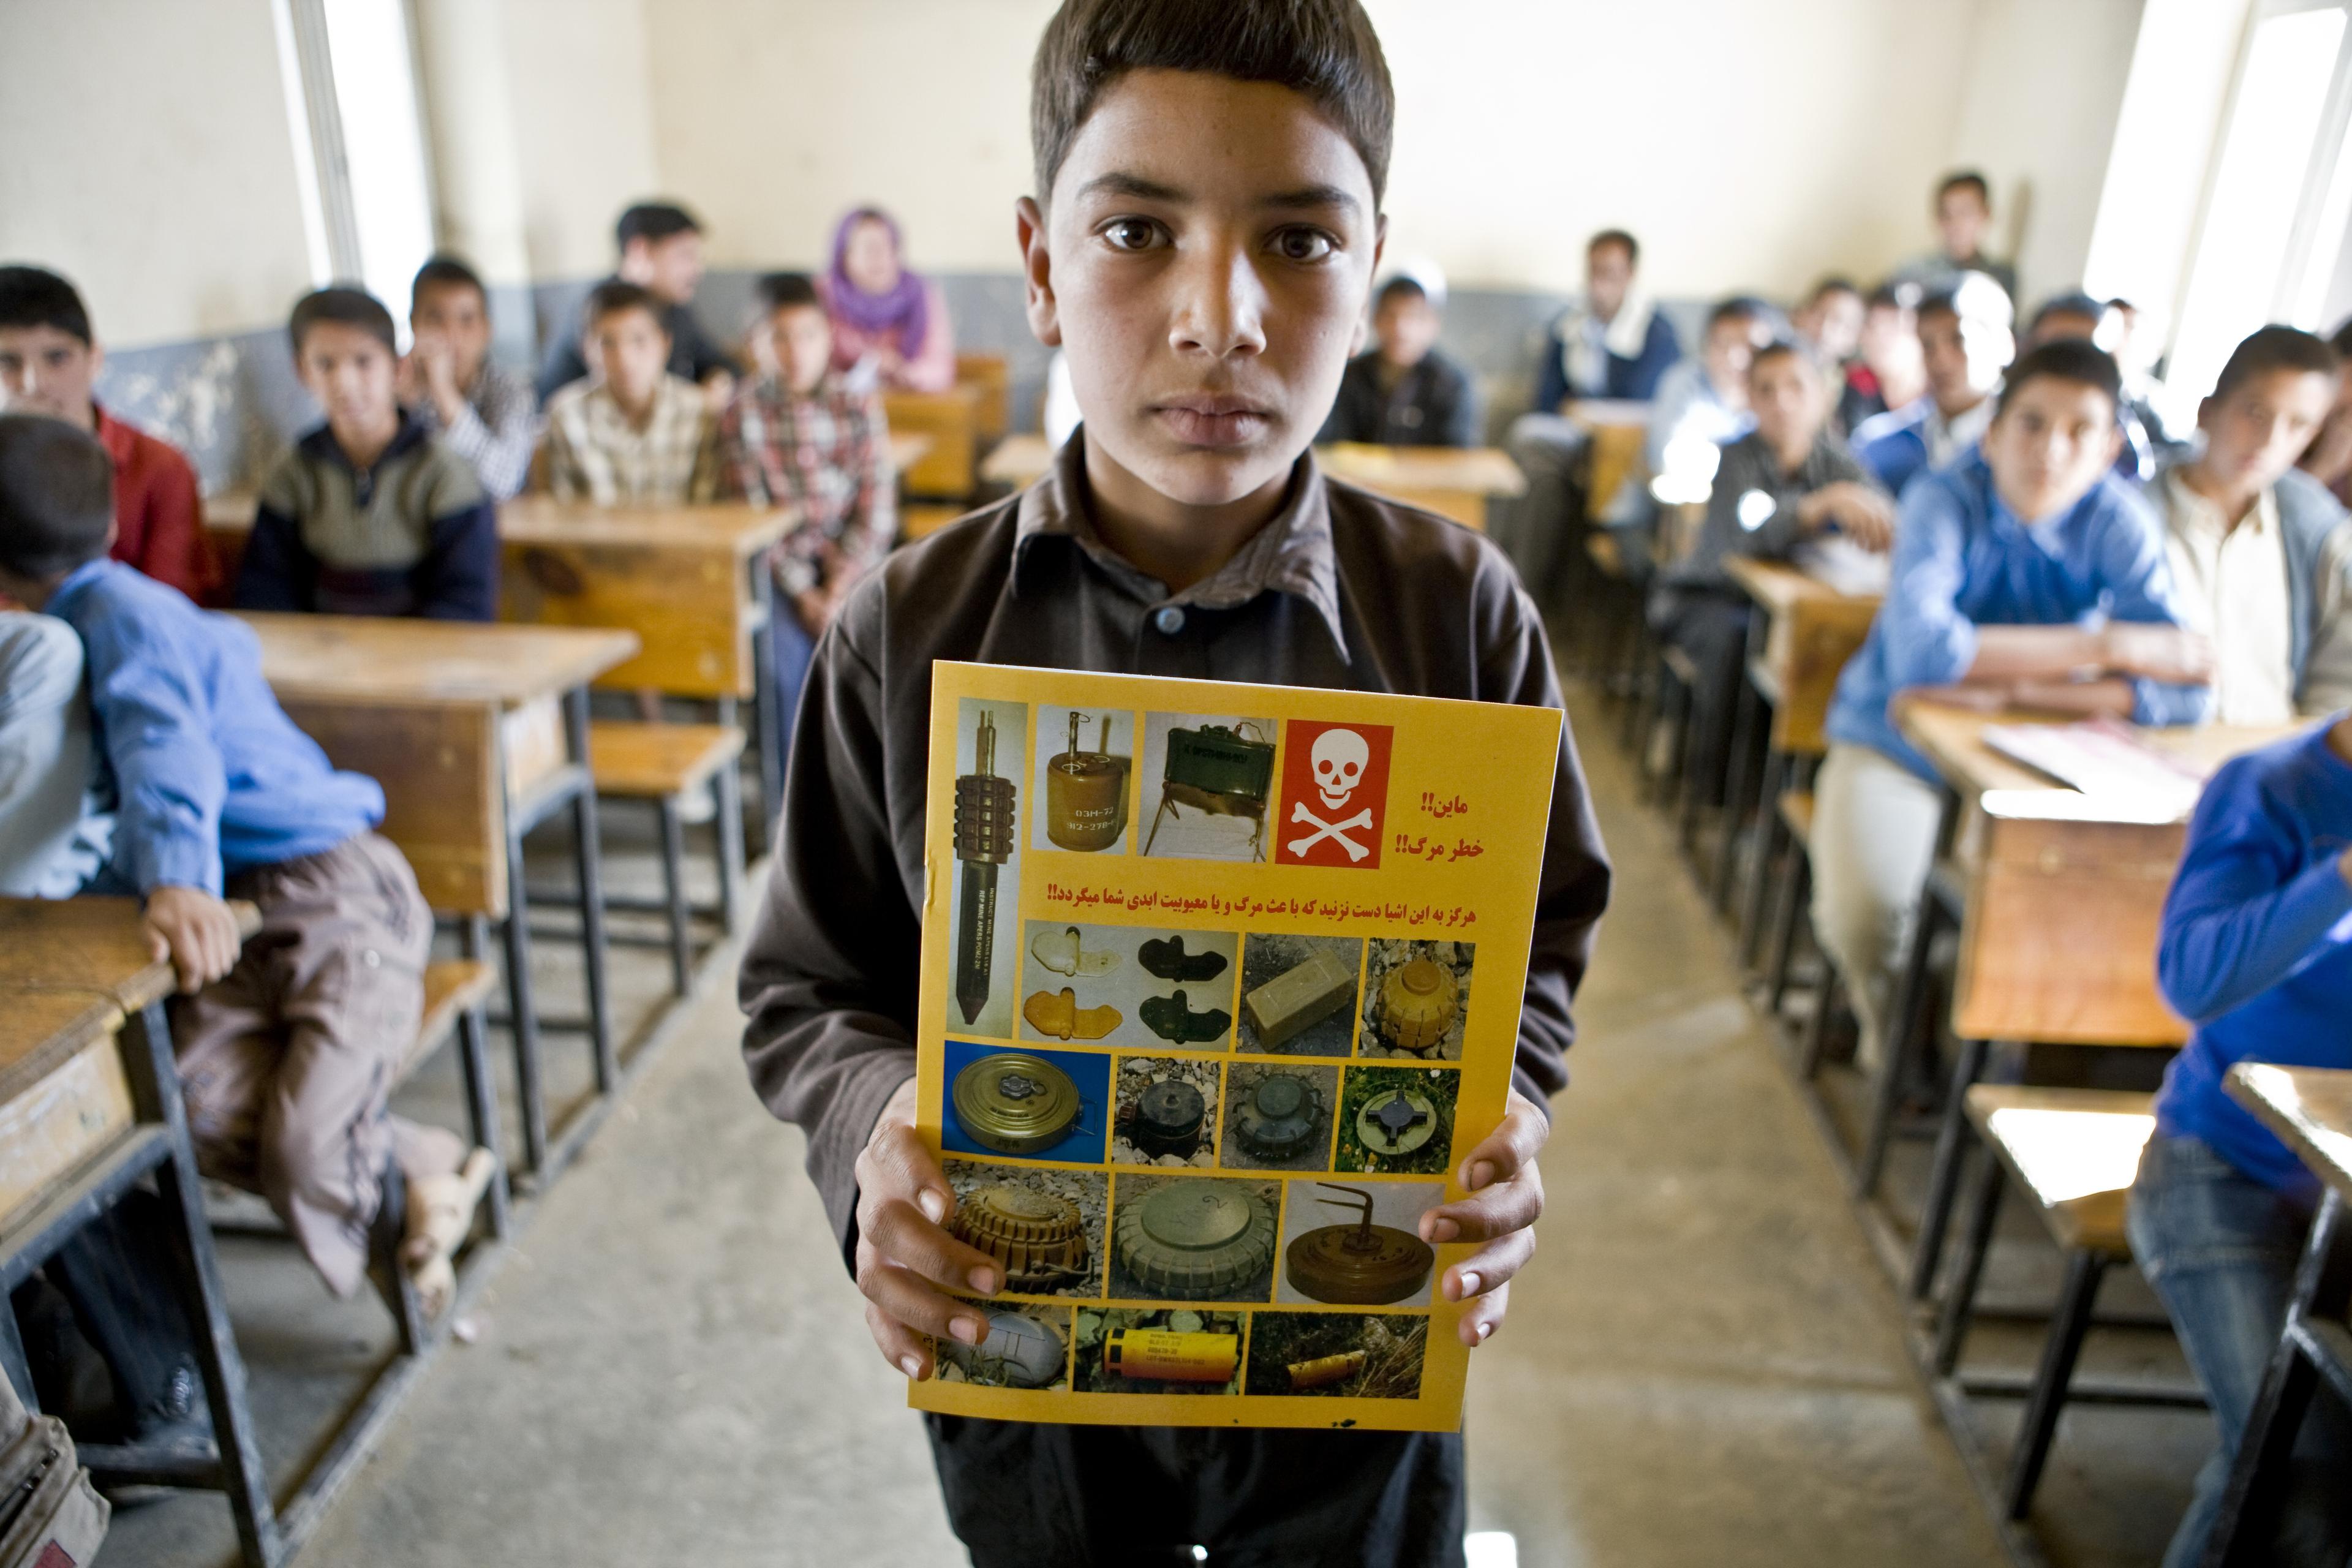 Ein Junge steht im Klassenzimmer und hält ein Heft hoch, das über Minen aufklärt. Seine Mitschüler:innen sind im Hintergrund.